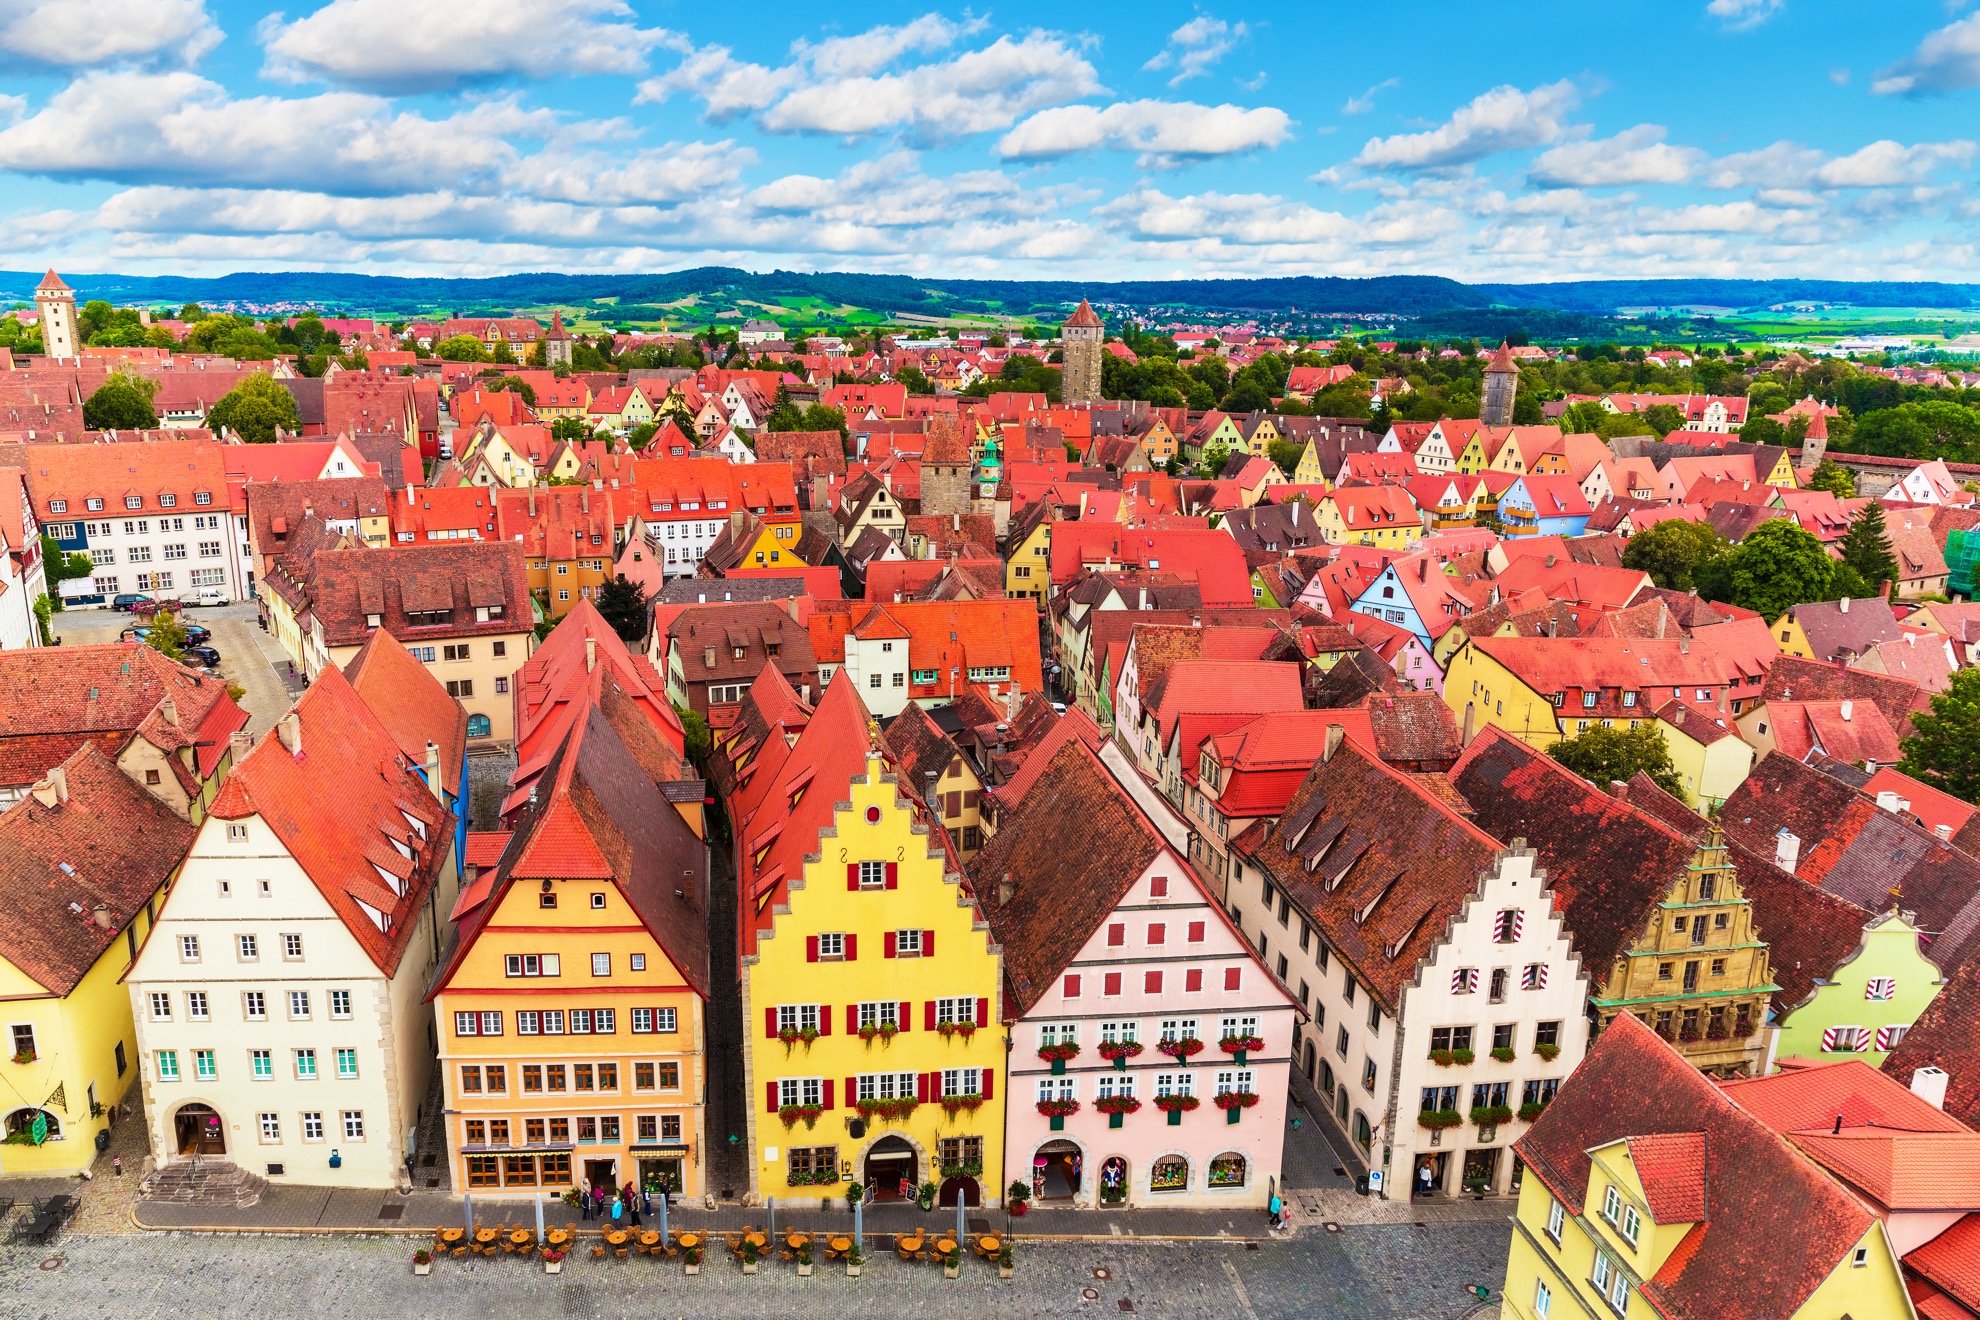 7 cosas rápidas para saber sobre el encantador Rothenburg Ob der Tauber de Alemania - 9